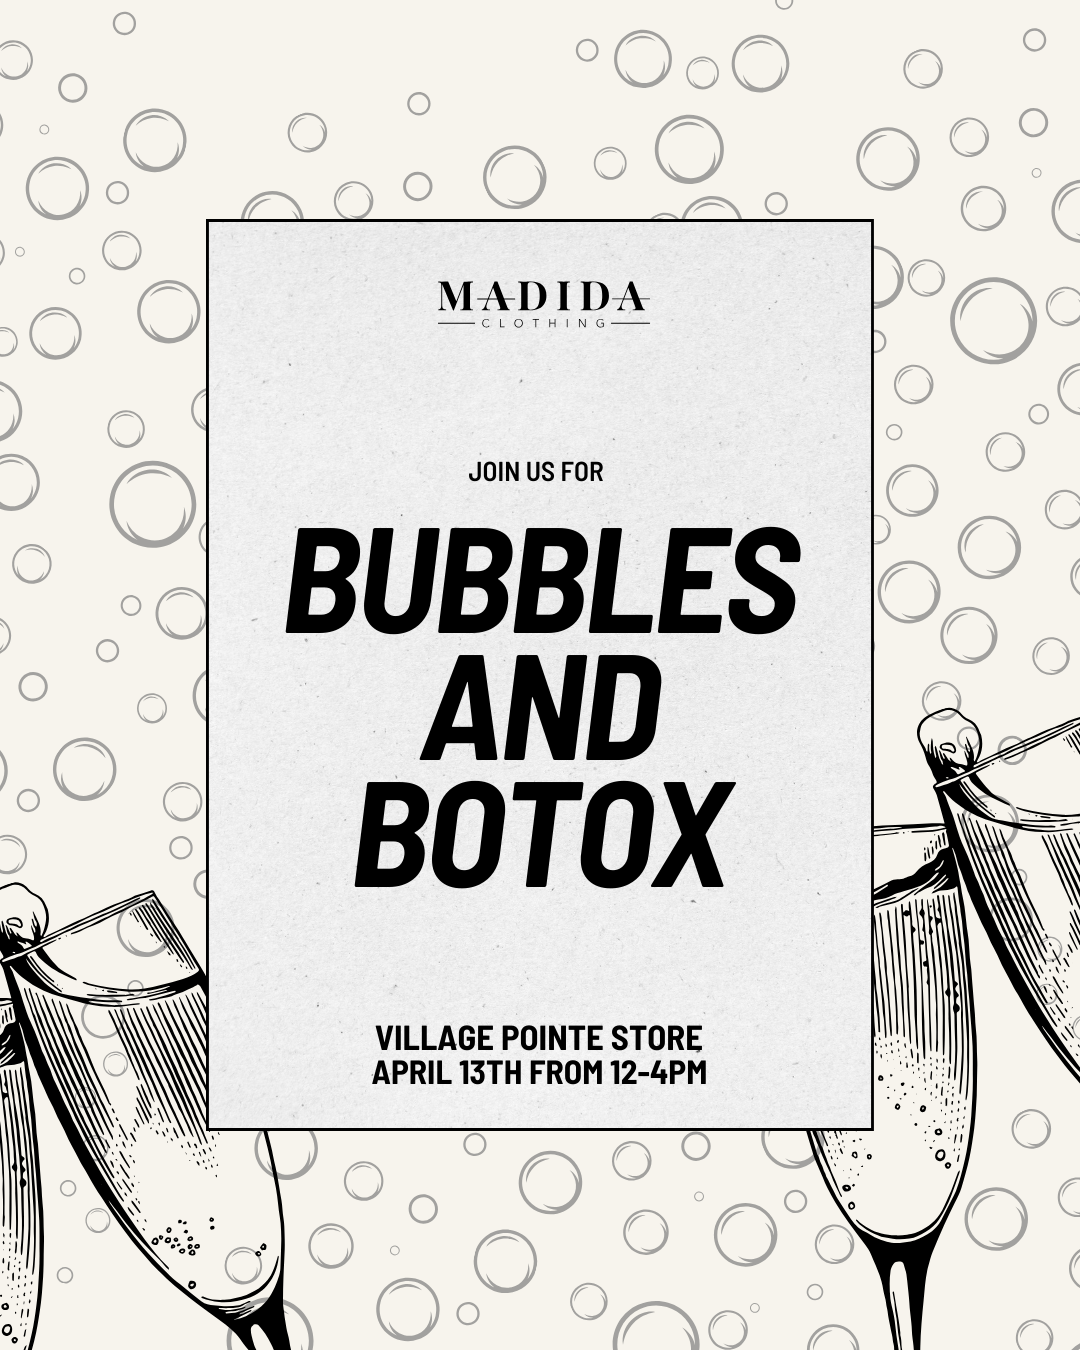 Bubbles and Botox at Madida Clothing